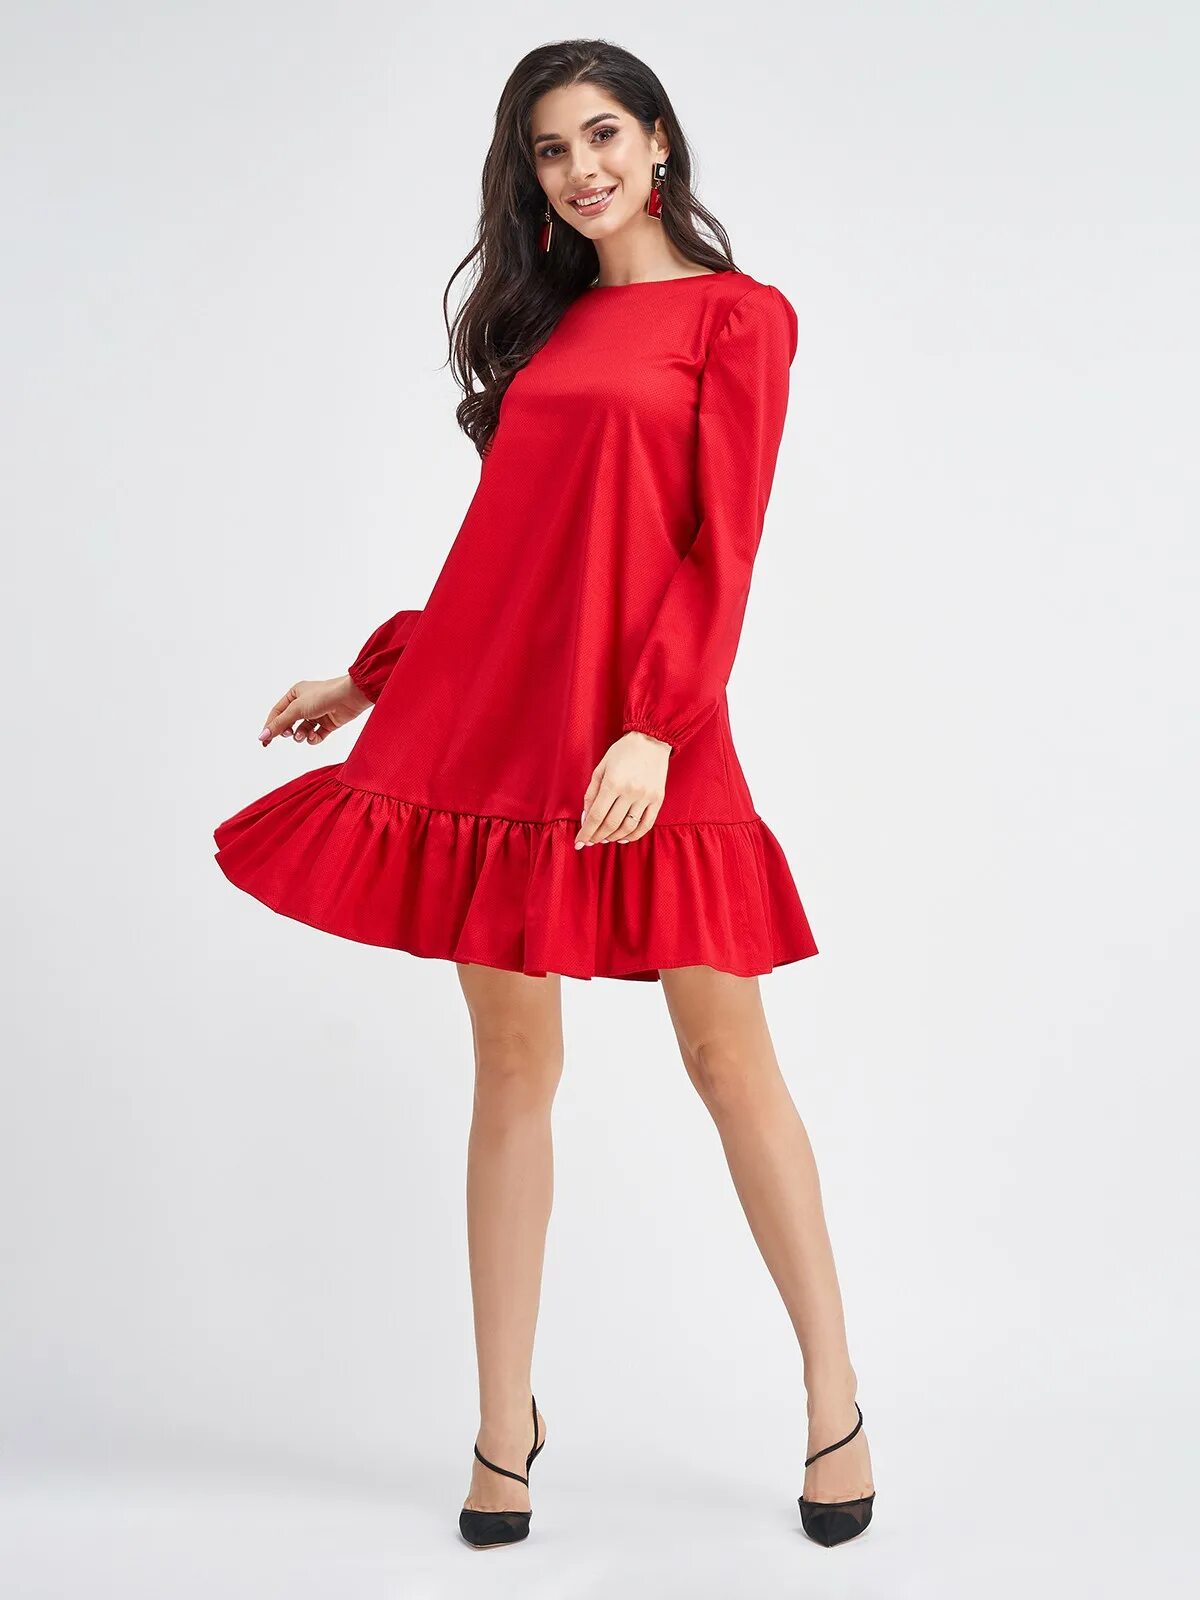 Красное свободное. Красное платье трапеция. Красное платье свободного кроя. Красное платье с рукавом. Платье с воланами.